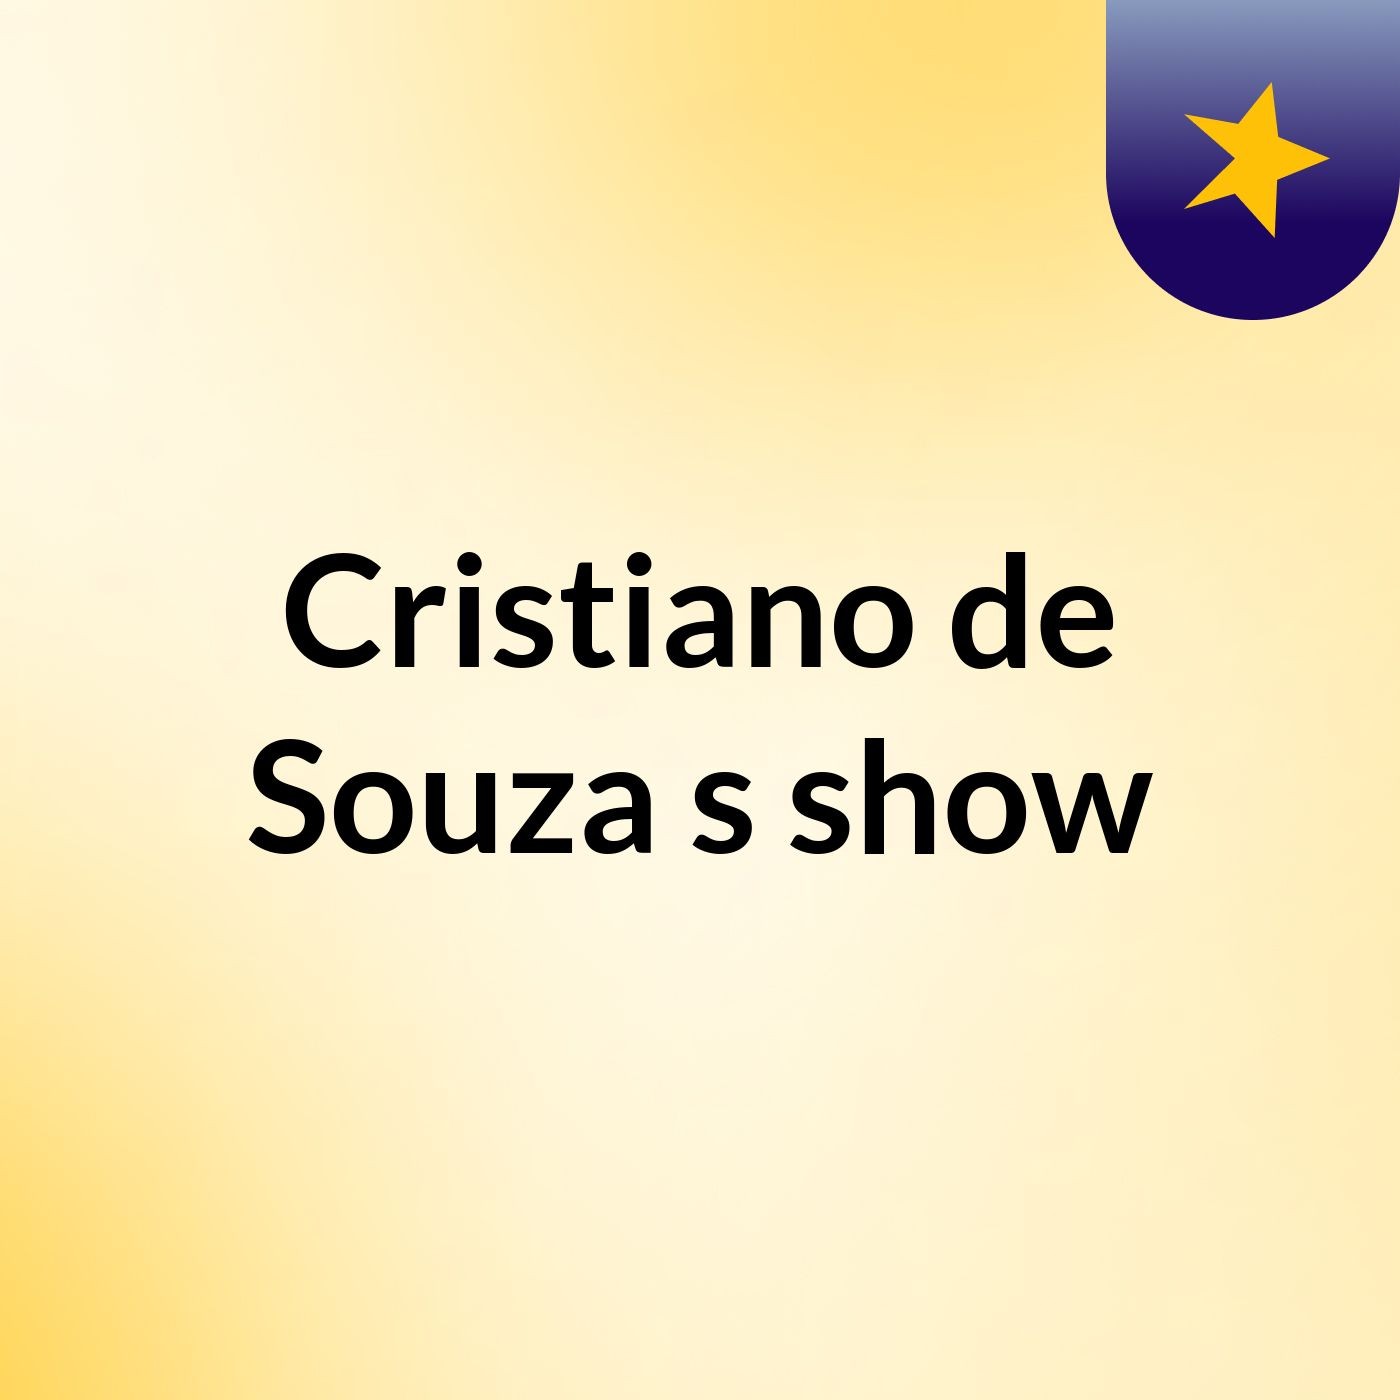 Cristiano de Souza's show